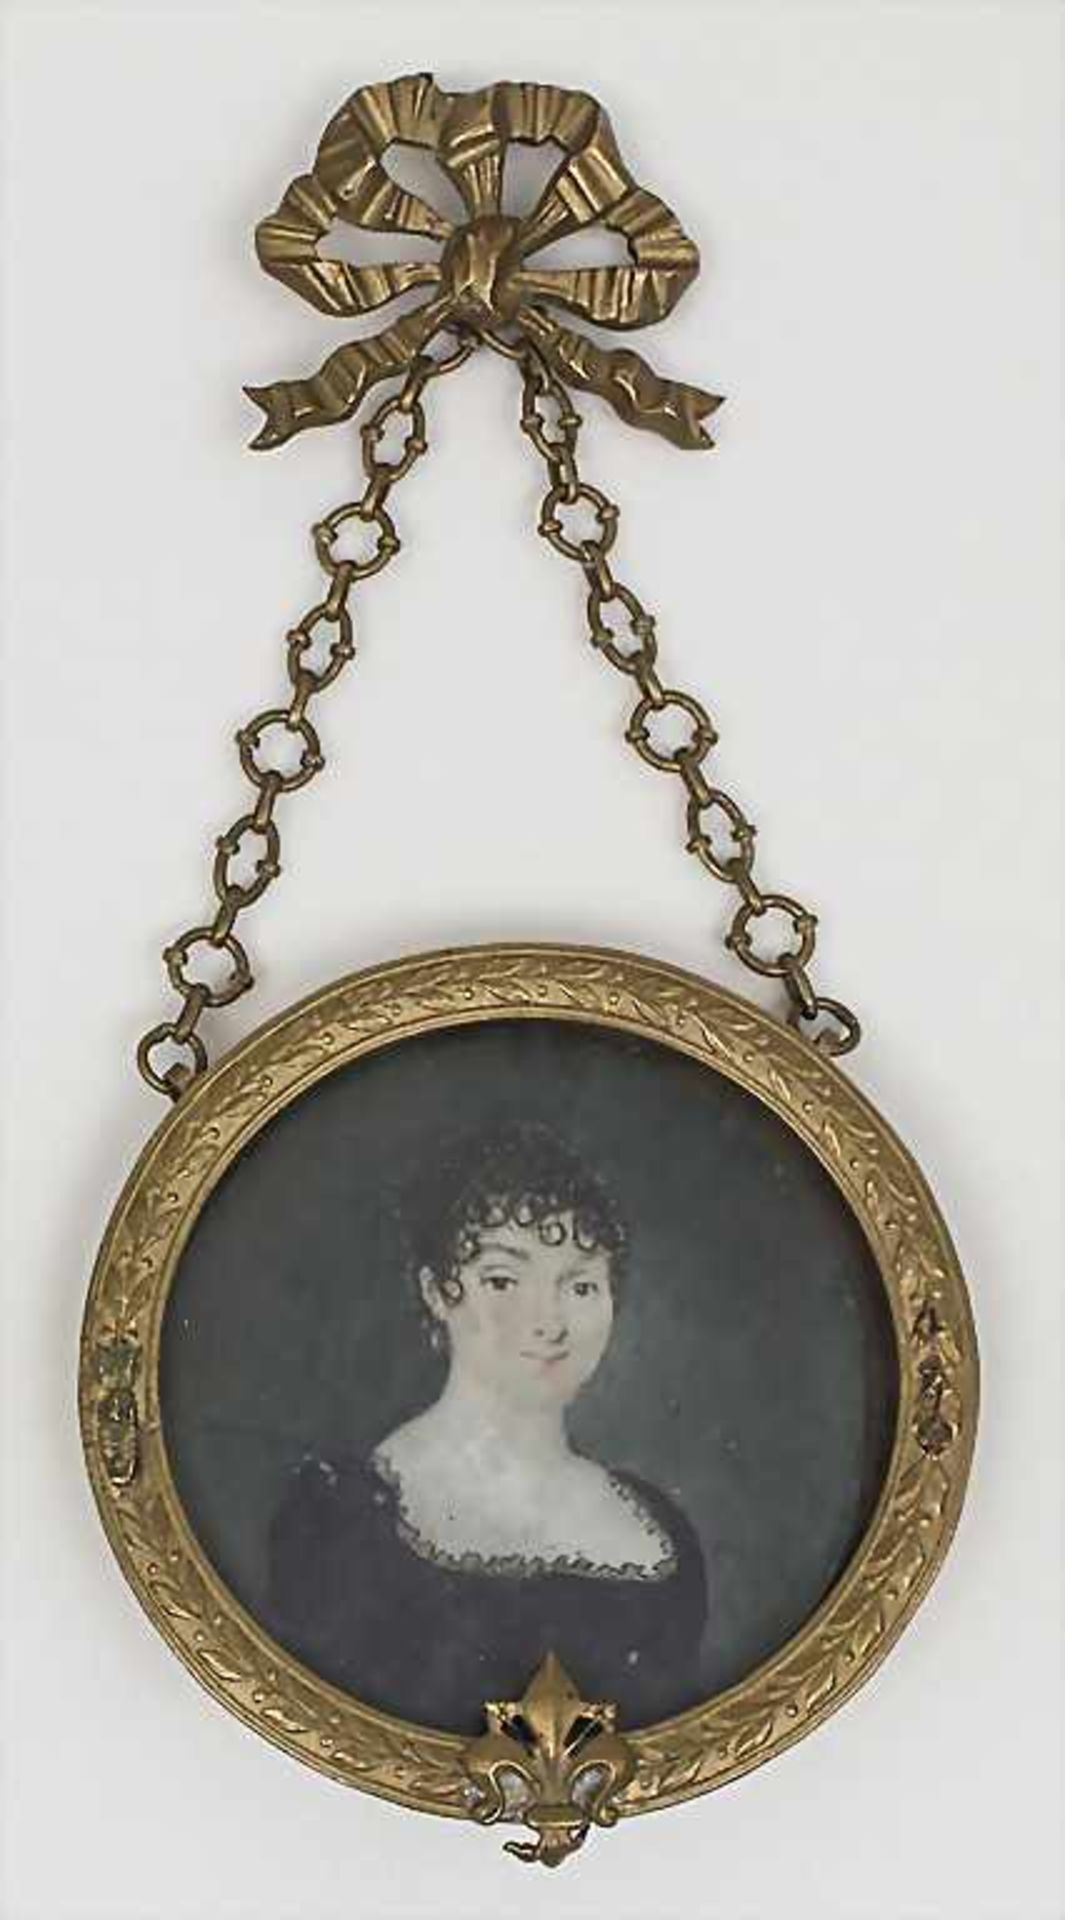 Miniatur einer jungen Dame mit Lockenfrisur / A miniatur portrait of a young lady with curly